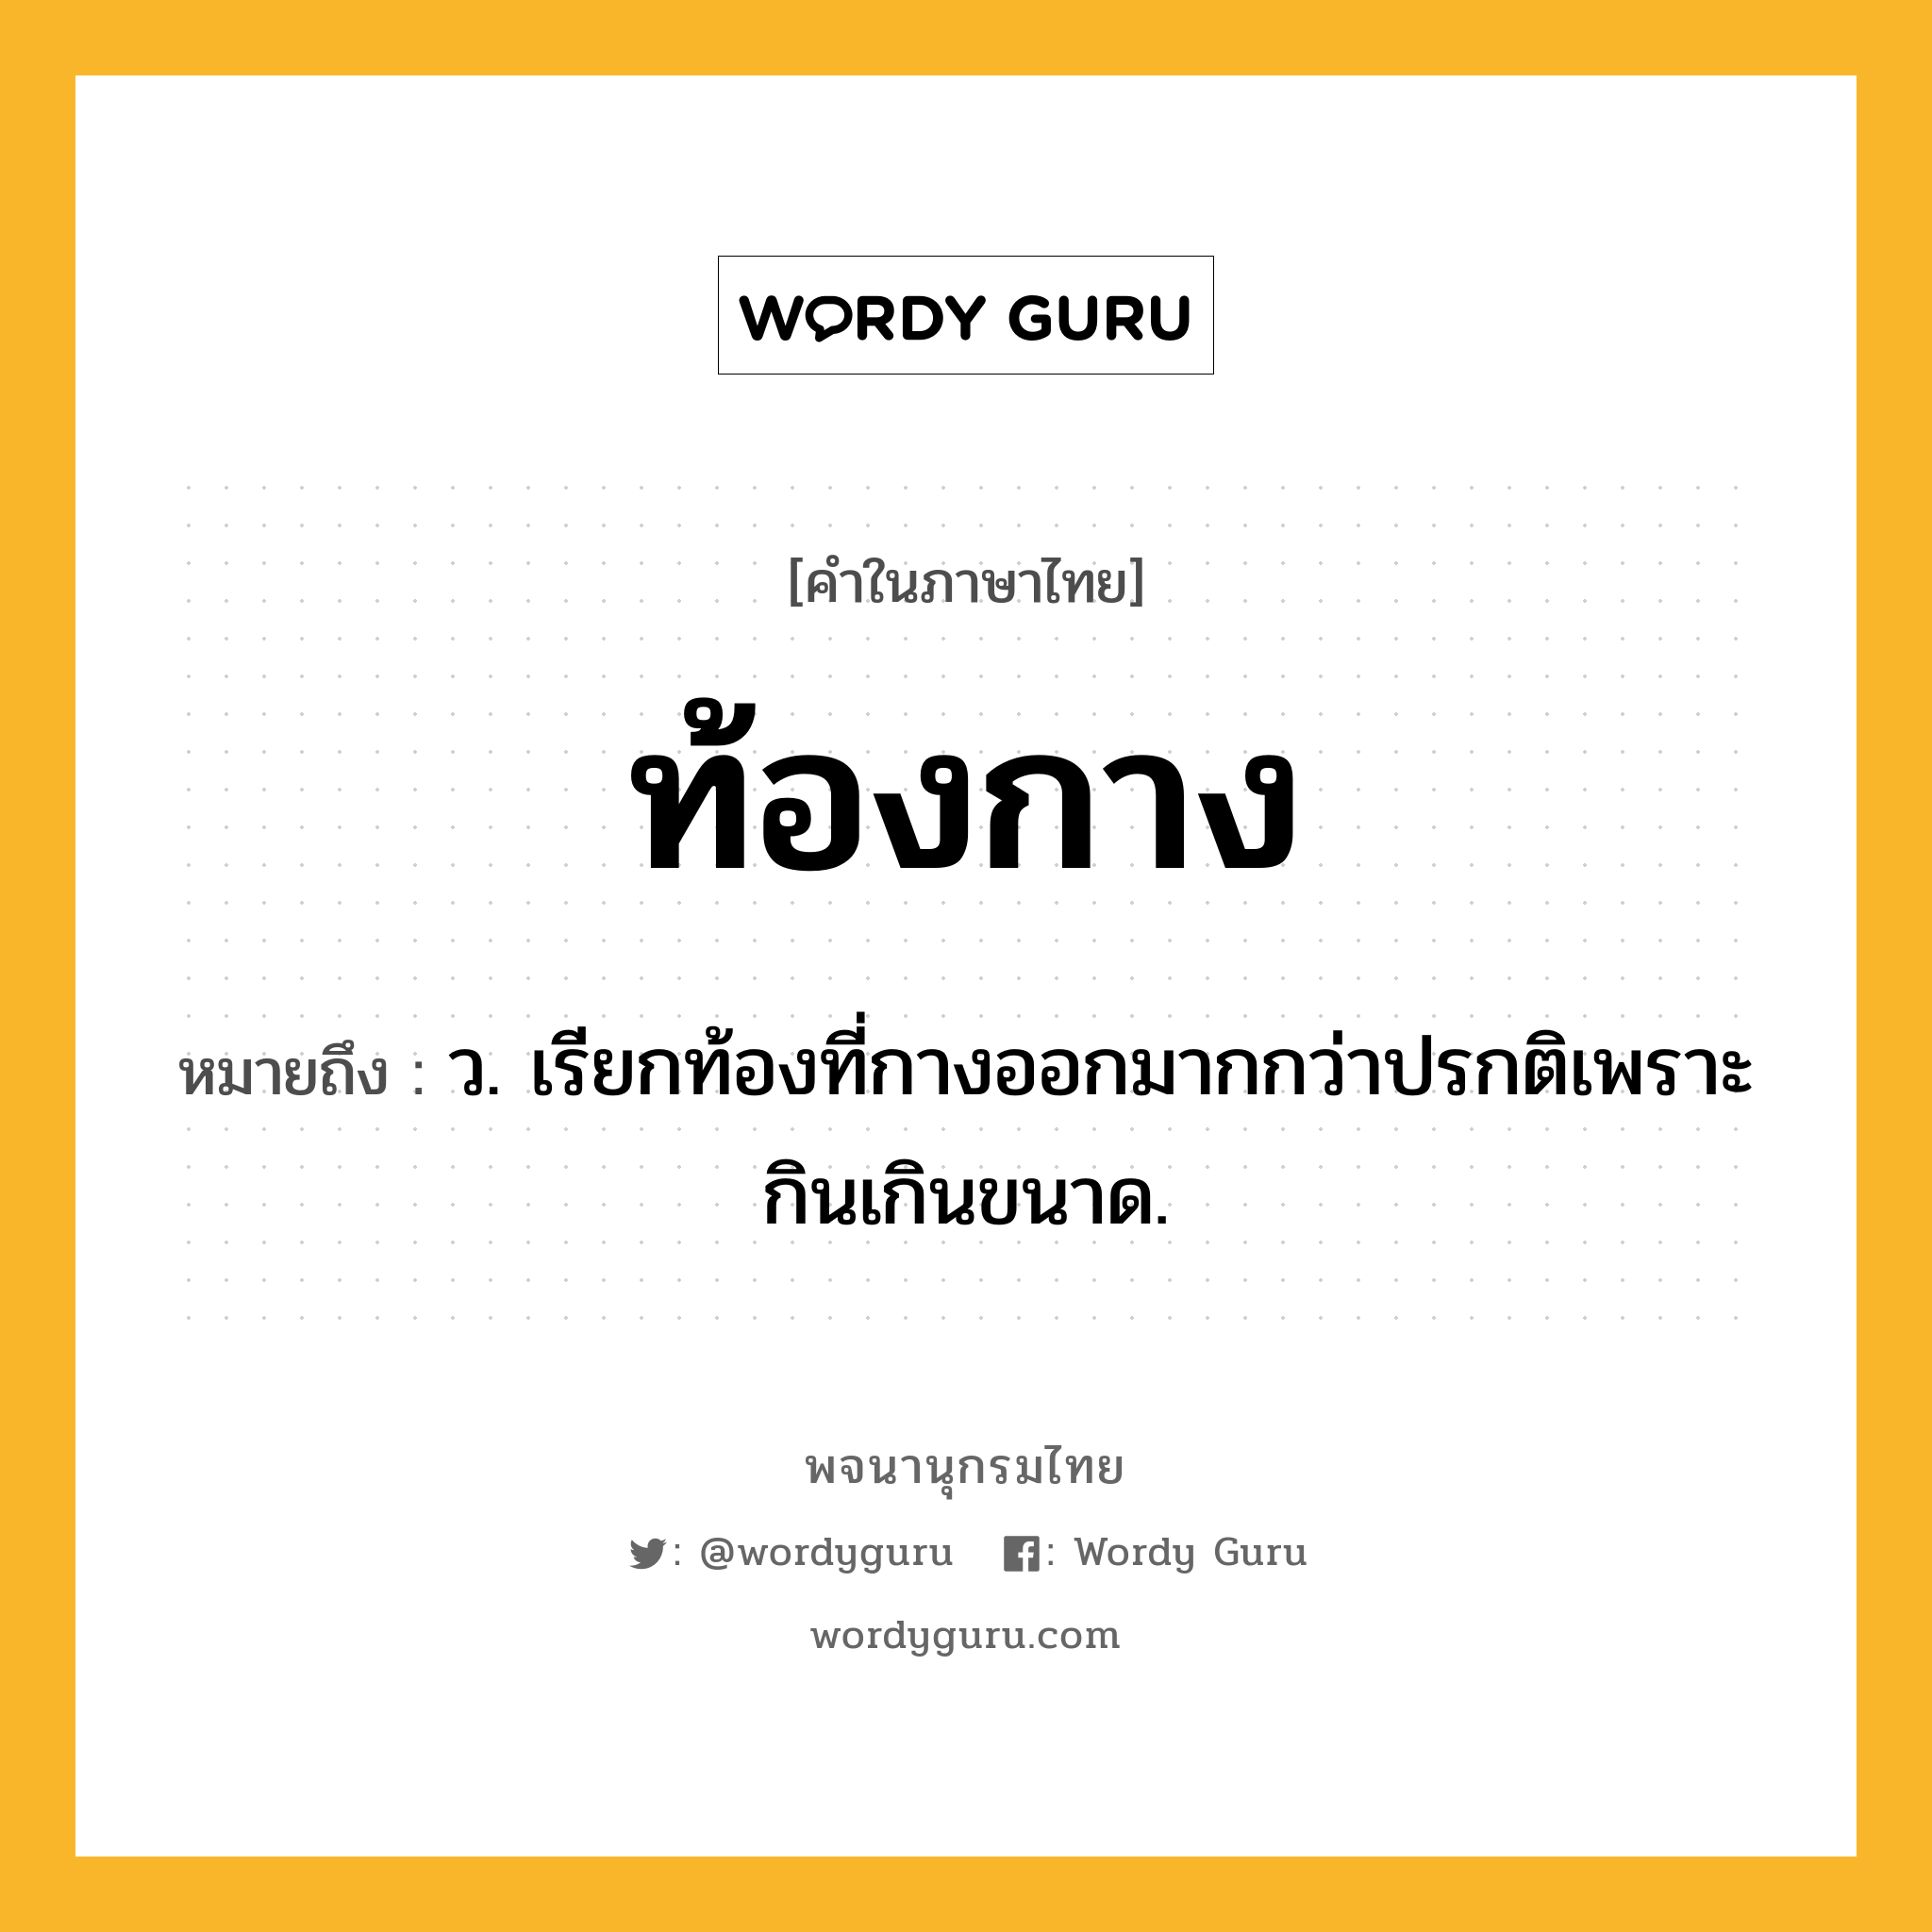 ท้องกาง ความหมาย หมายถึงอะไร?, คำในภาษาไทย ท้องกาง หมายถึง ว. เรียกท้องที่กางออกมากกว่าปรกติเพราะกินเกินขนาด.